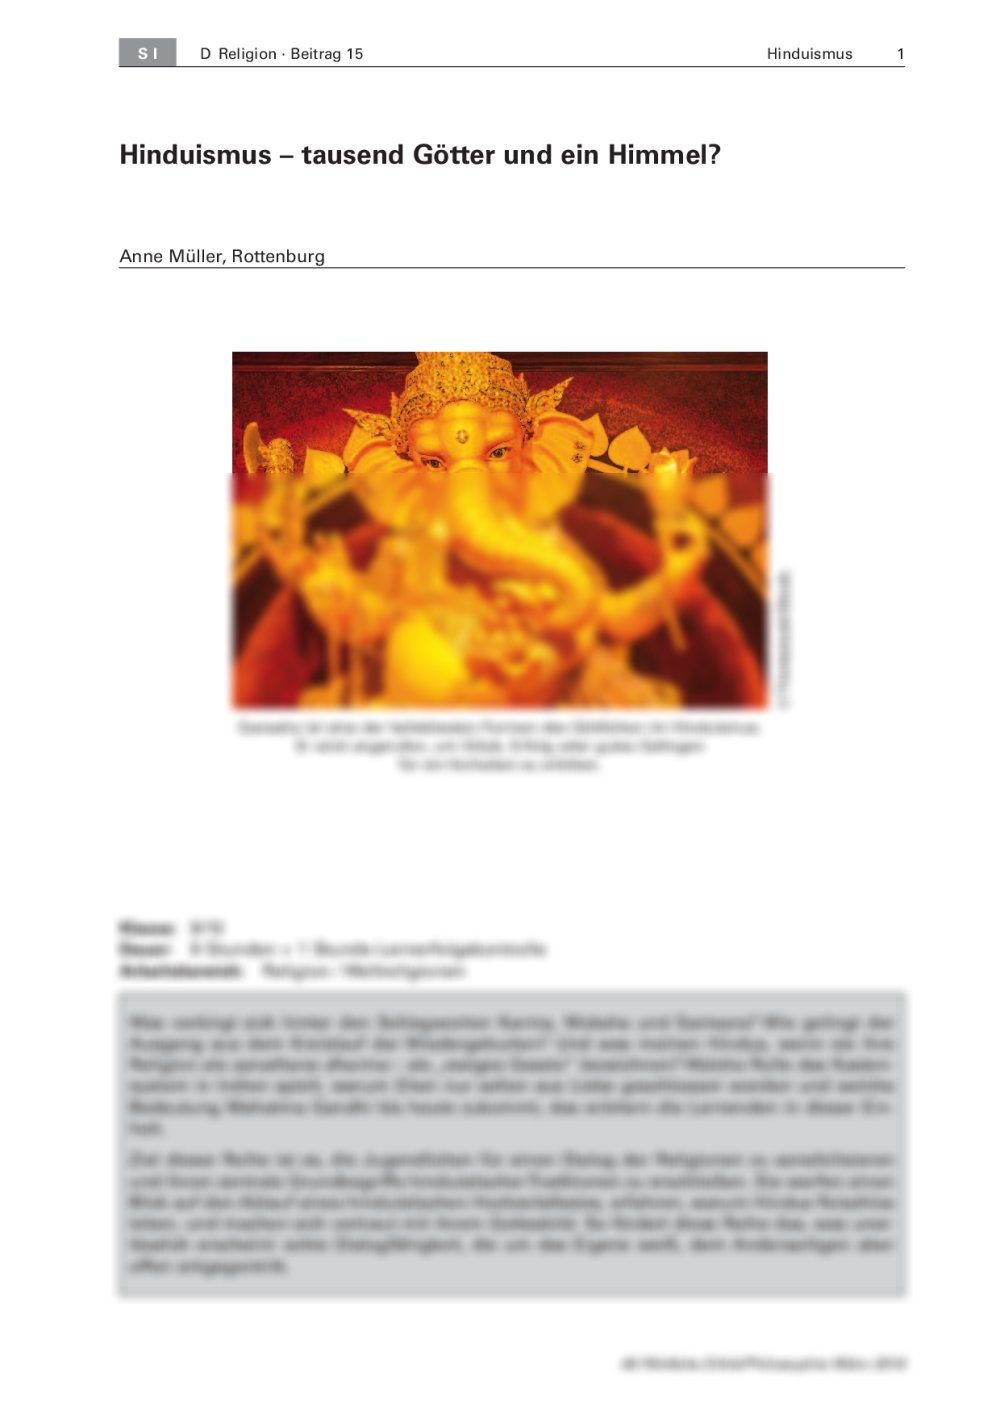 Hinduismus verstehen - Seite 1